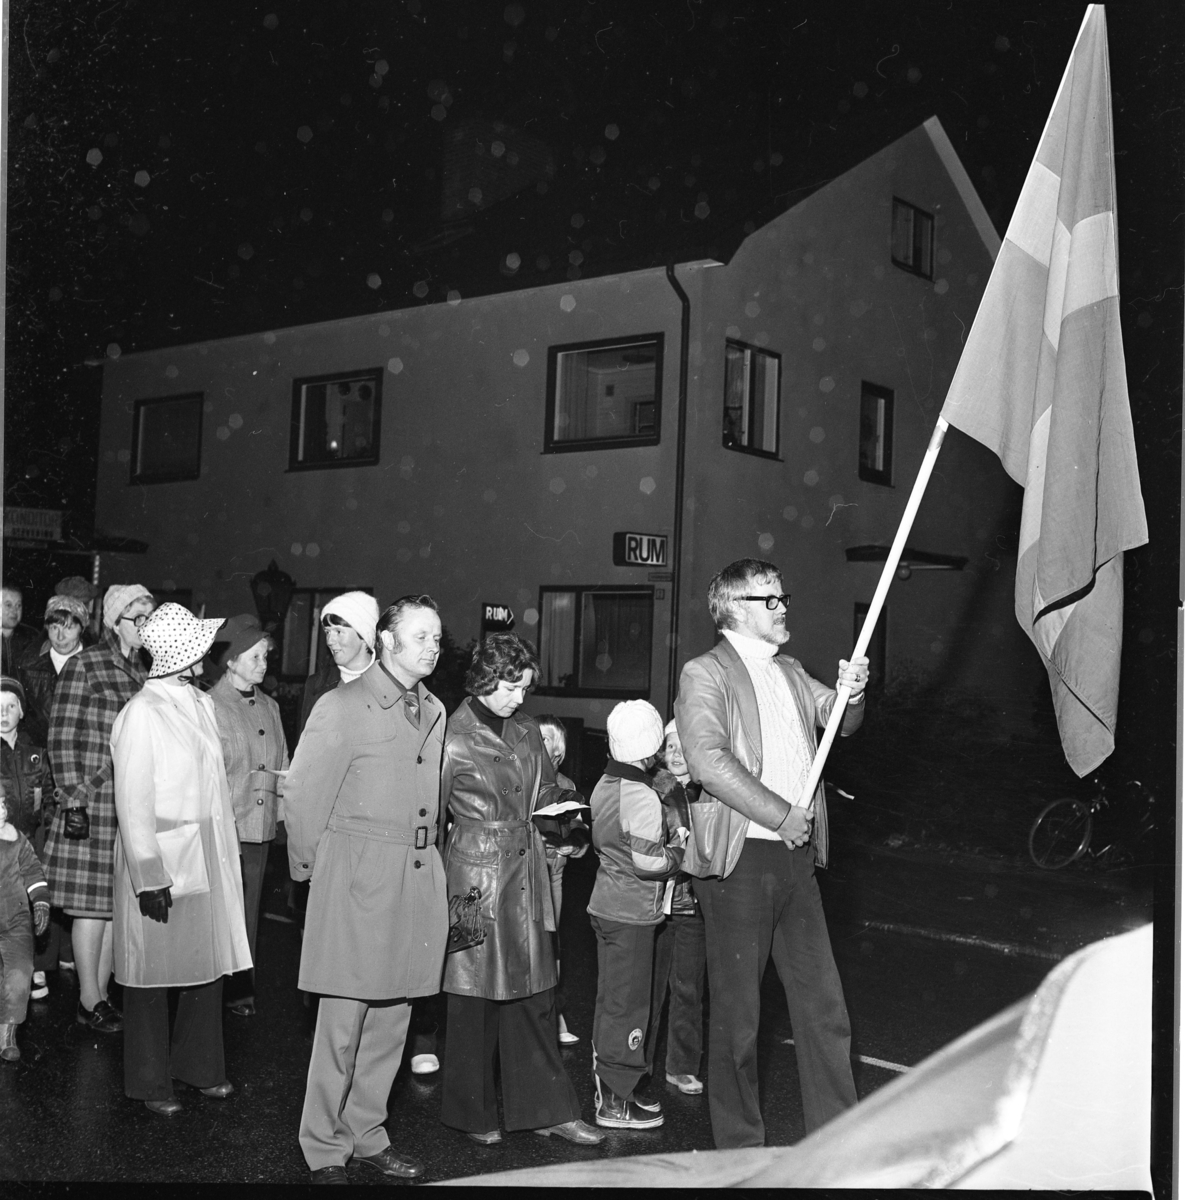 Vuxna och enstaka barn går i ett led efter en fanbärare med svensk flagga. Grännabor demonstrerar för att få en sporthall till Gränna. Det är oktober, mörkt och blött. Mannen i rock är Allan Svensson.